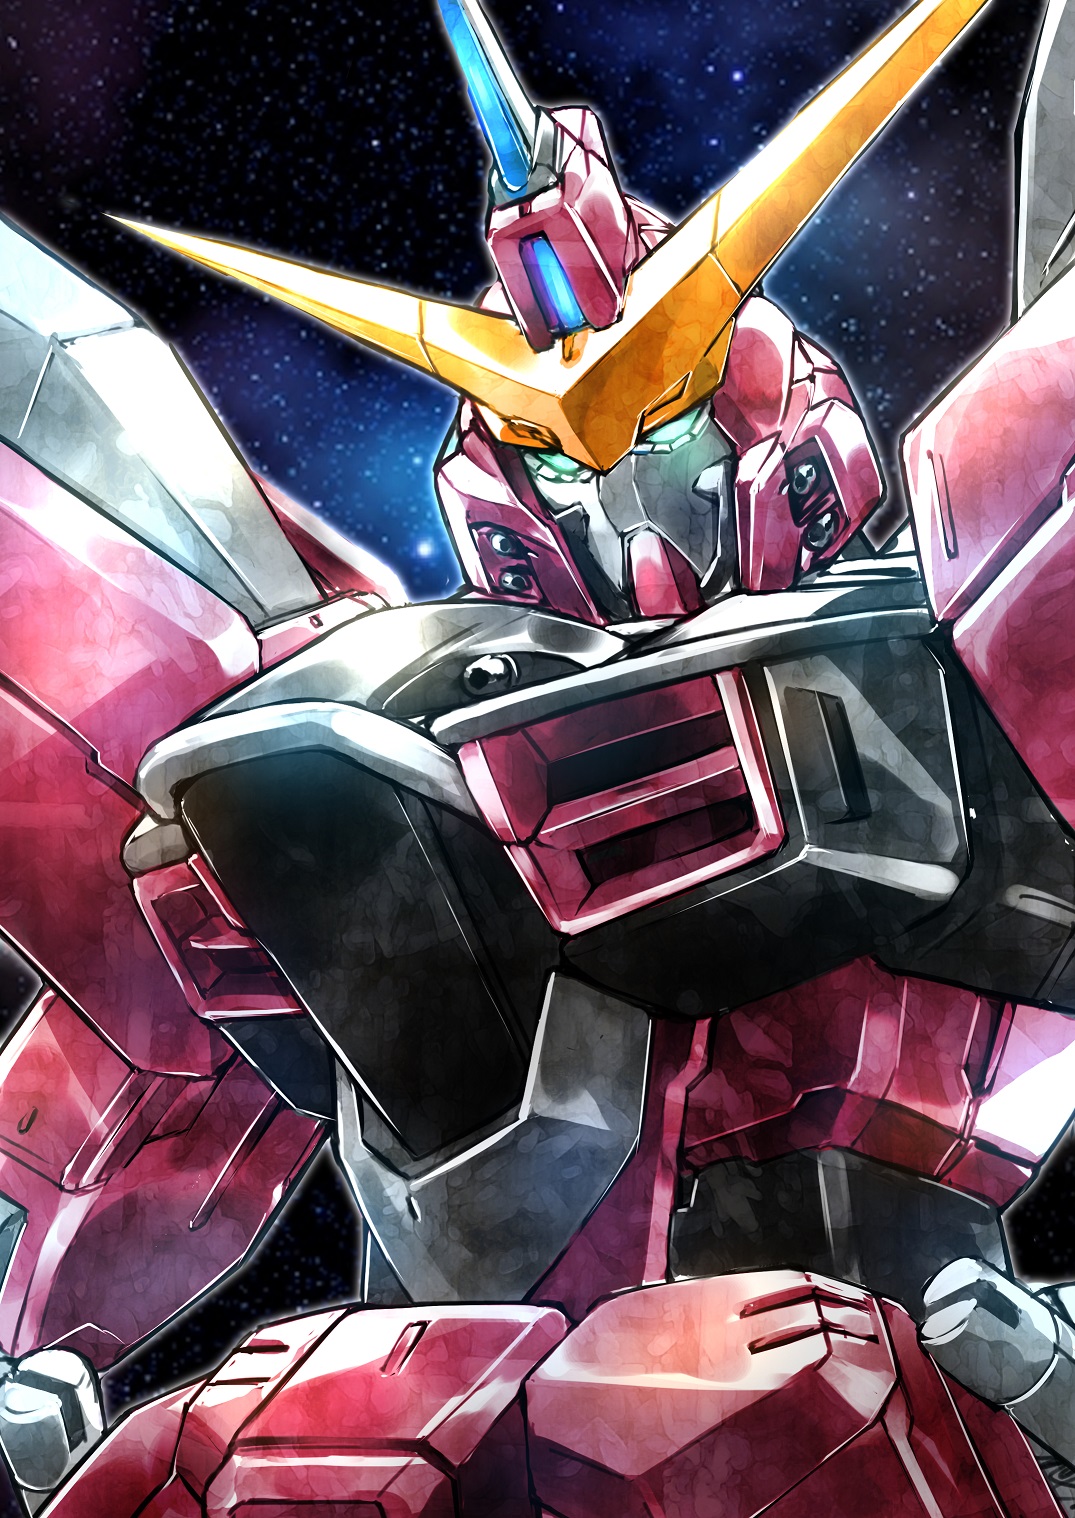 Anime 1075x1518 anime Gundam Mobile Suit Gundam SEED Super Robot Taisen Justice Gundam artwork digital art fan art robot mechs